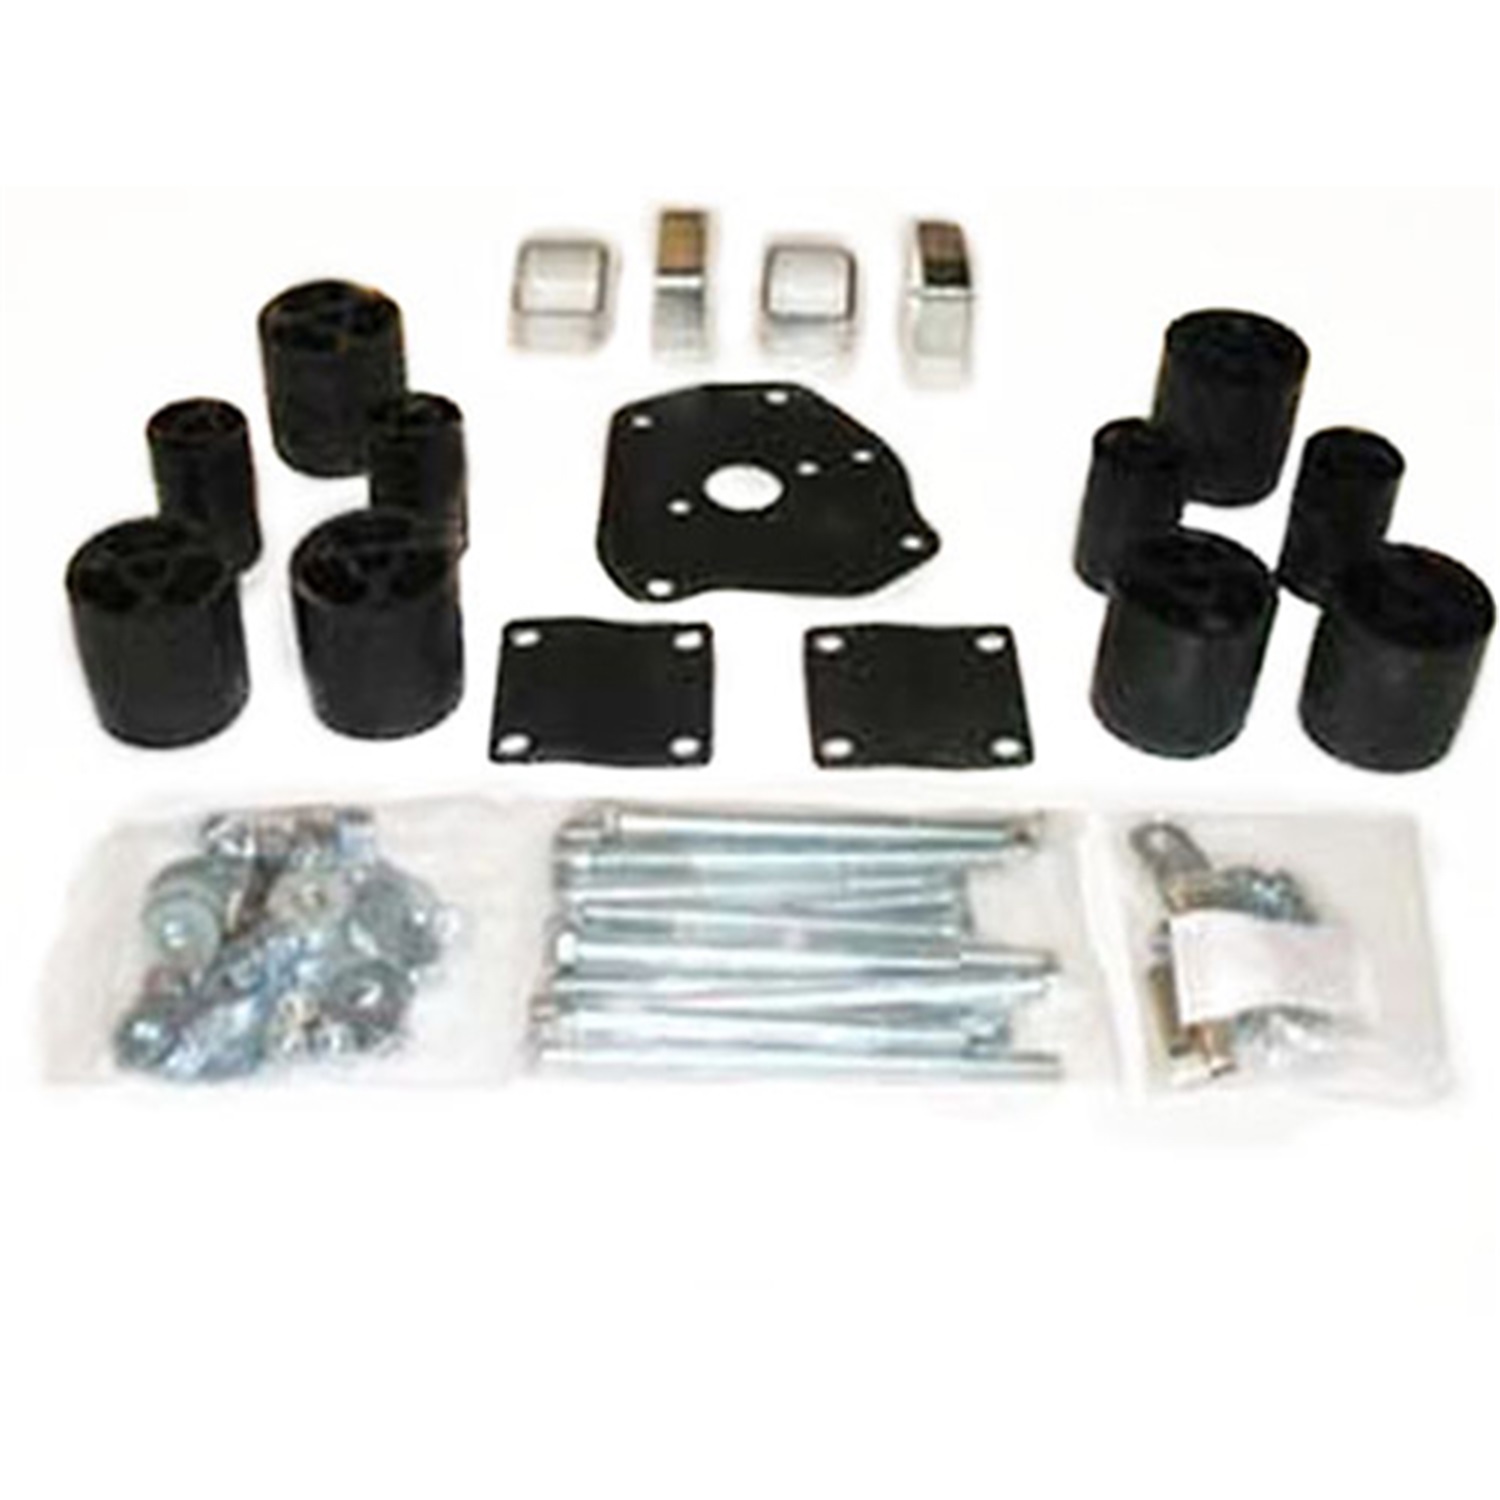 Performance Accessories Performance Accessories 5513M Body Lift Kit Fits 90-95 4Runner